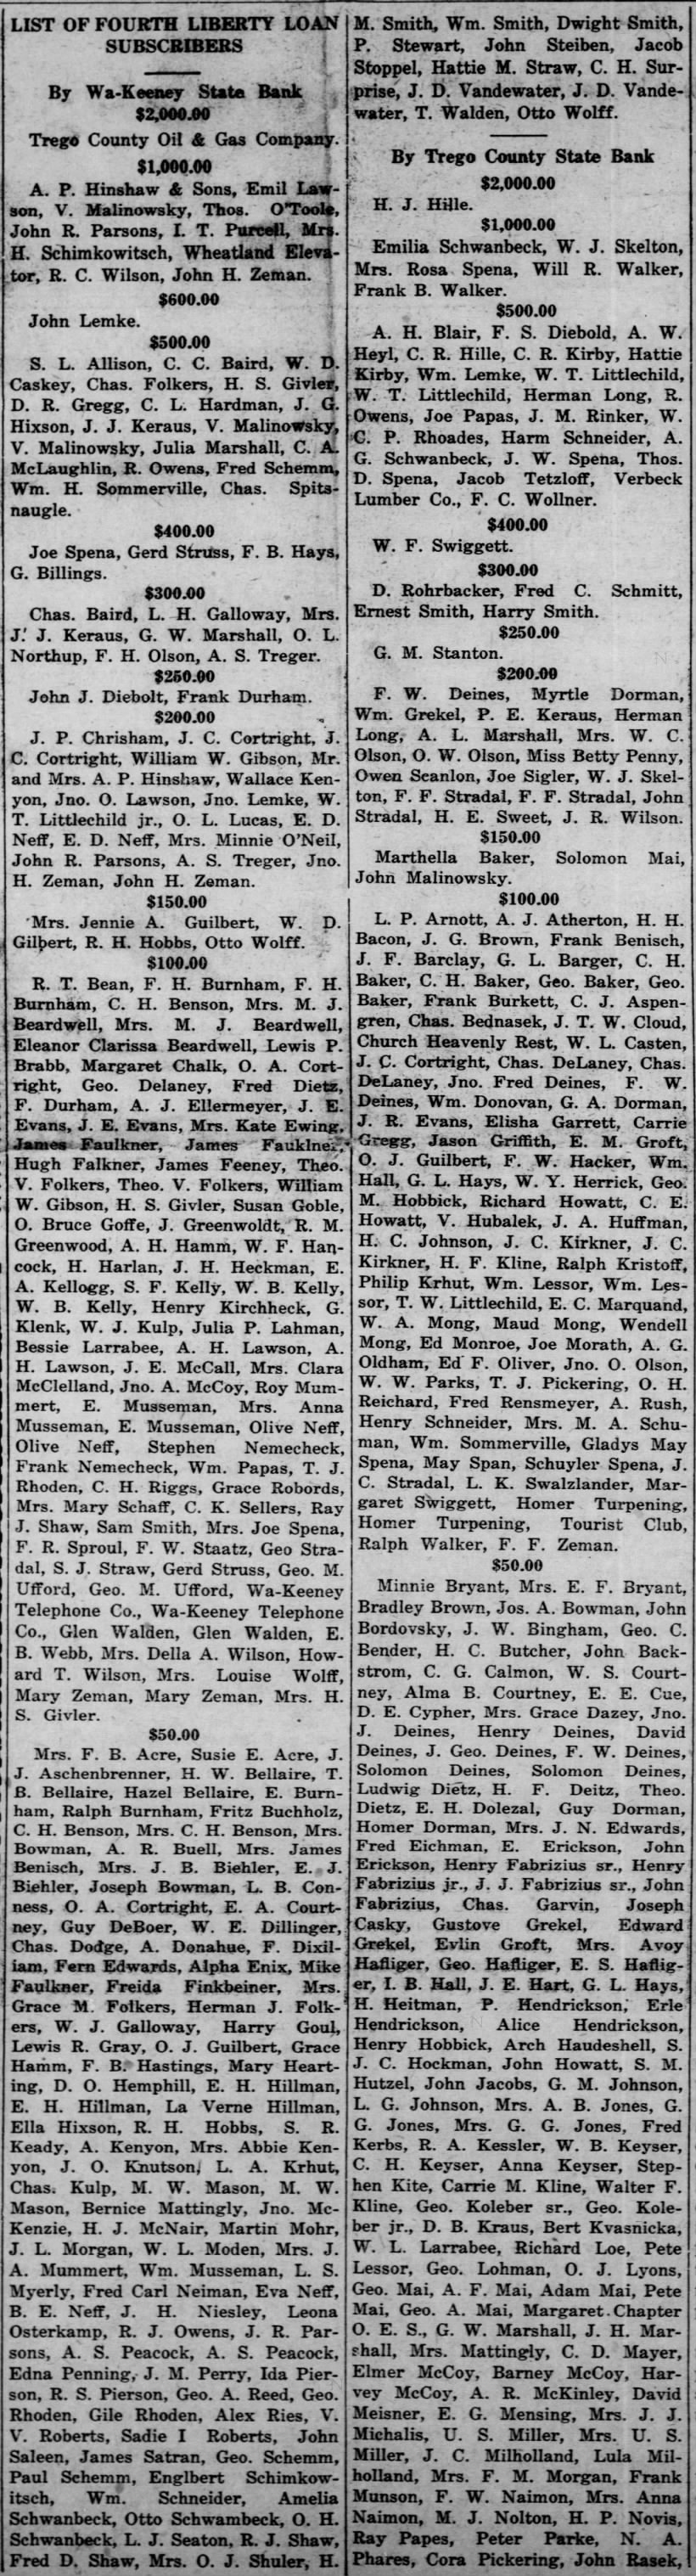 Liberty Loan Subscribers, 12/5/1918